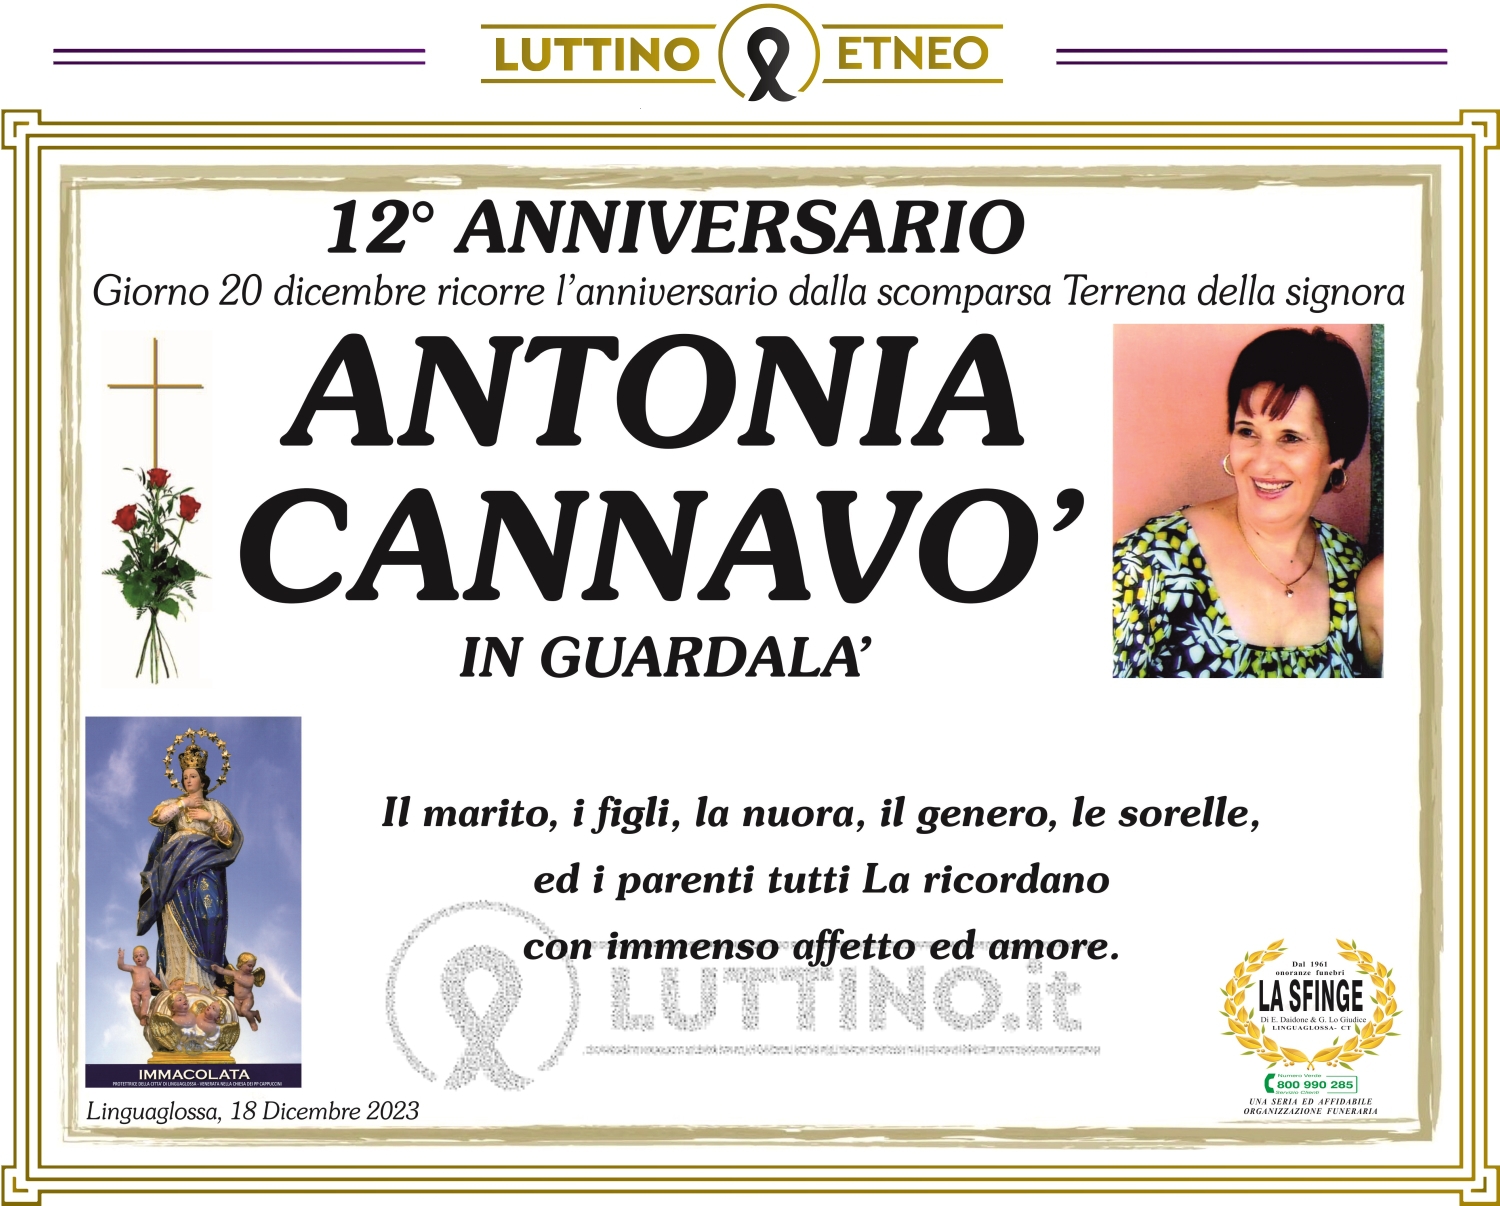 Antonia Cannavò